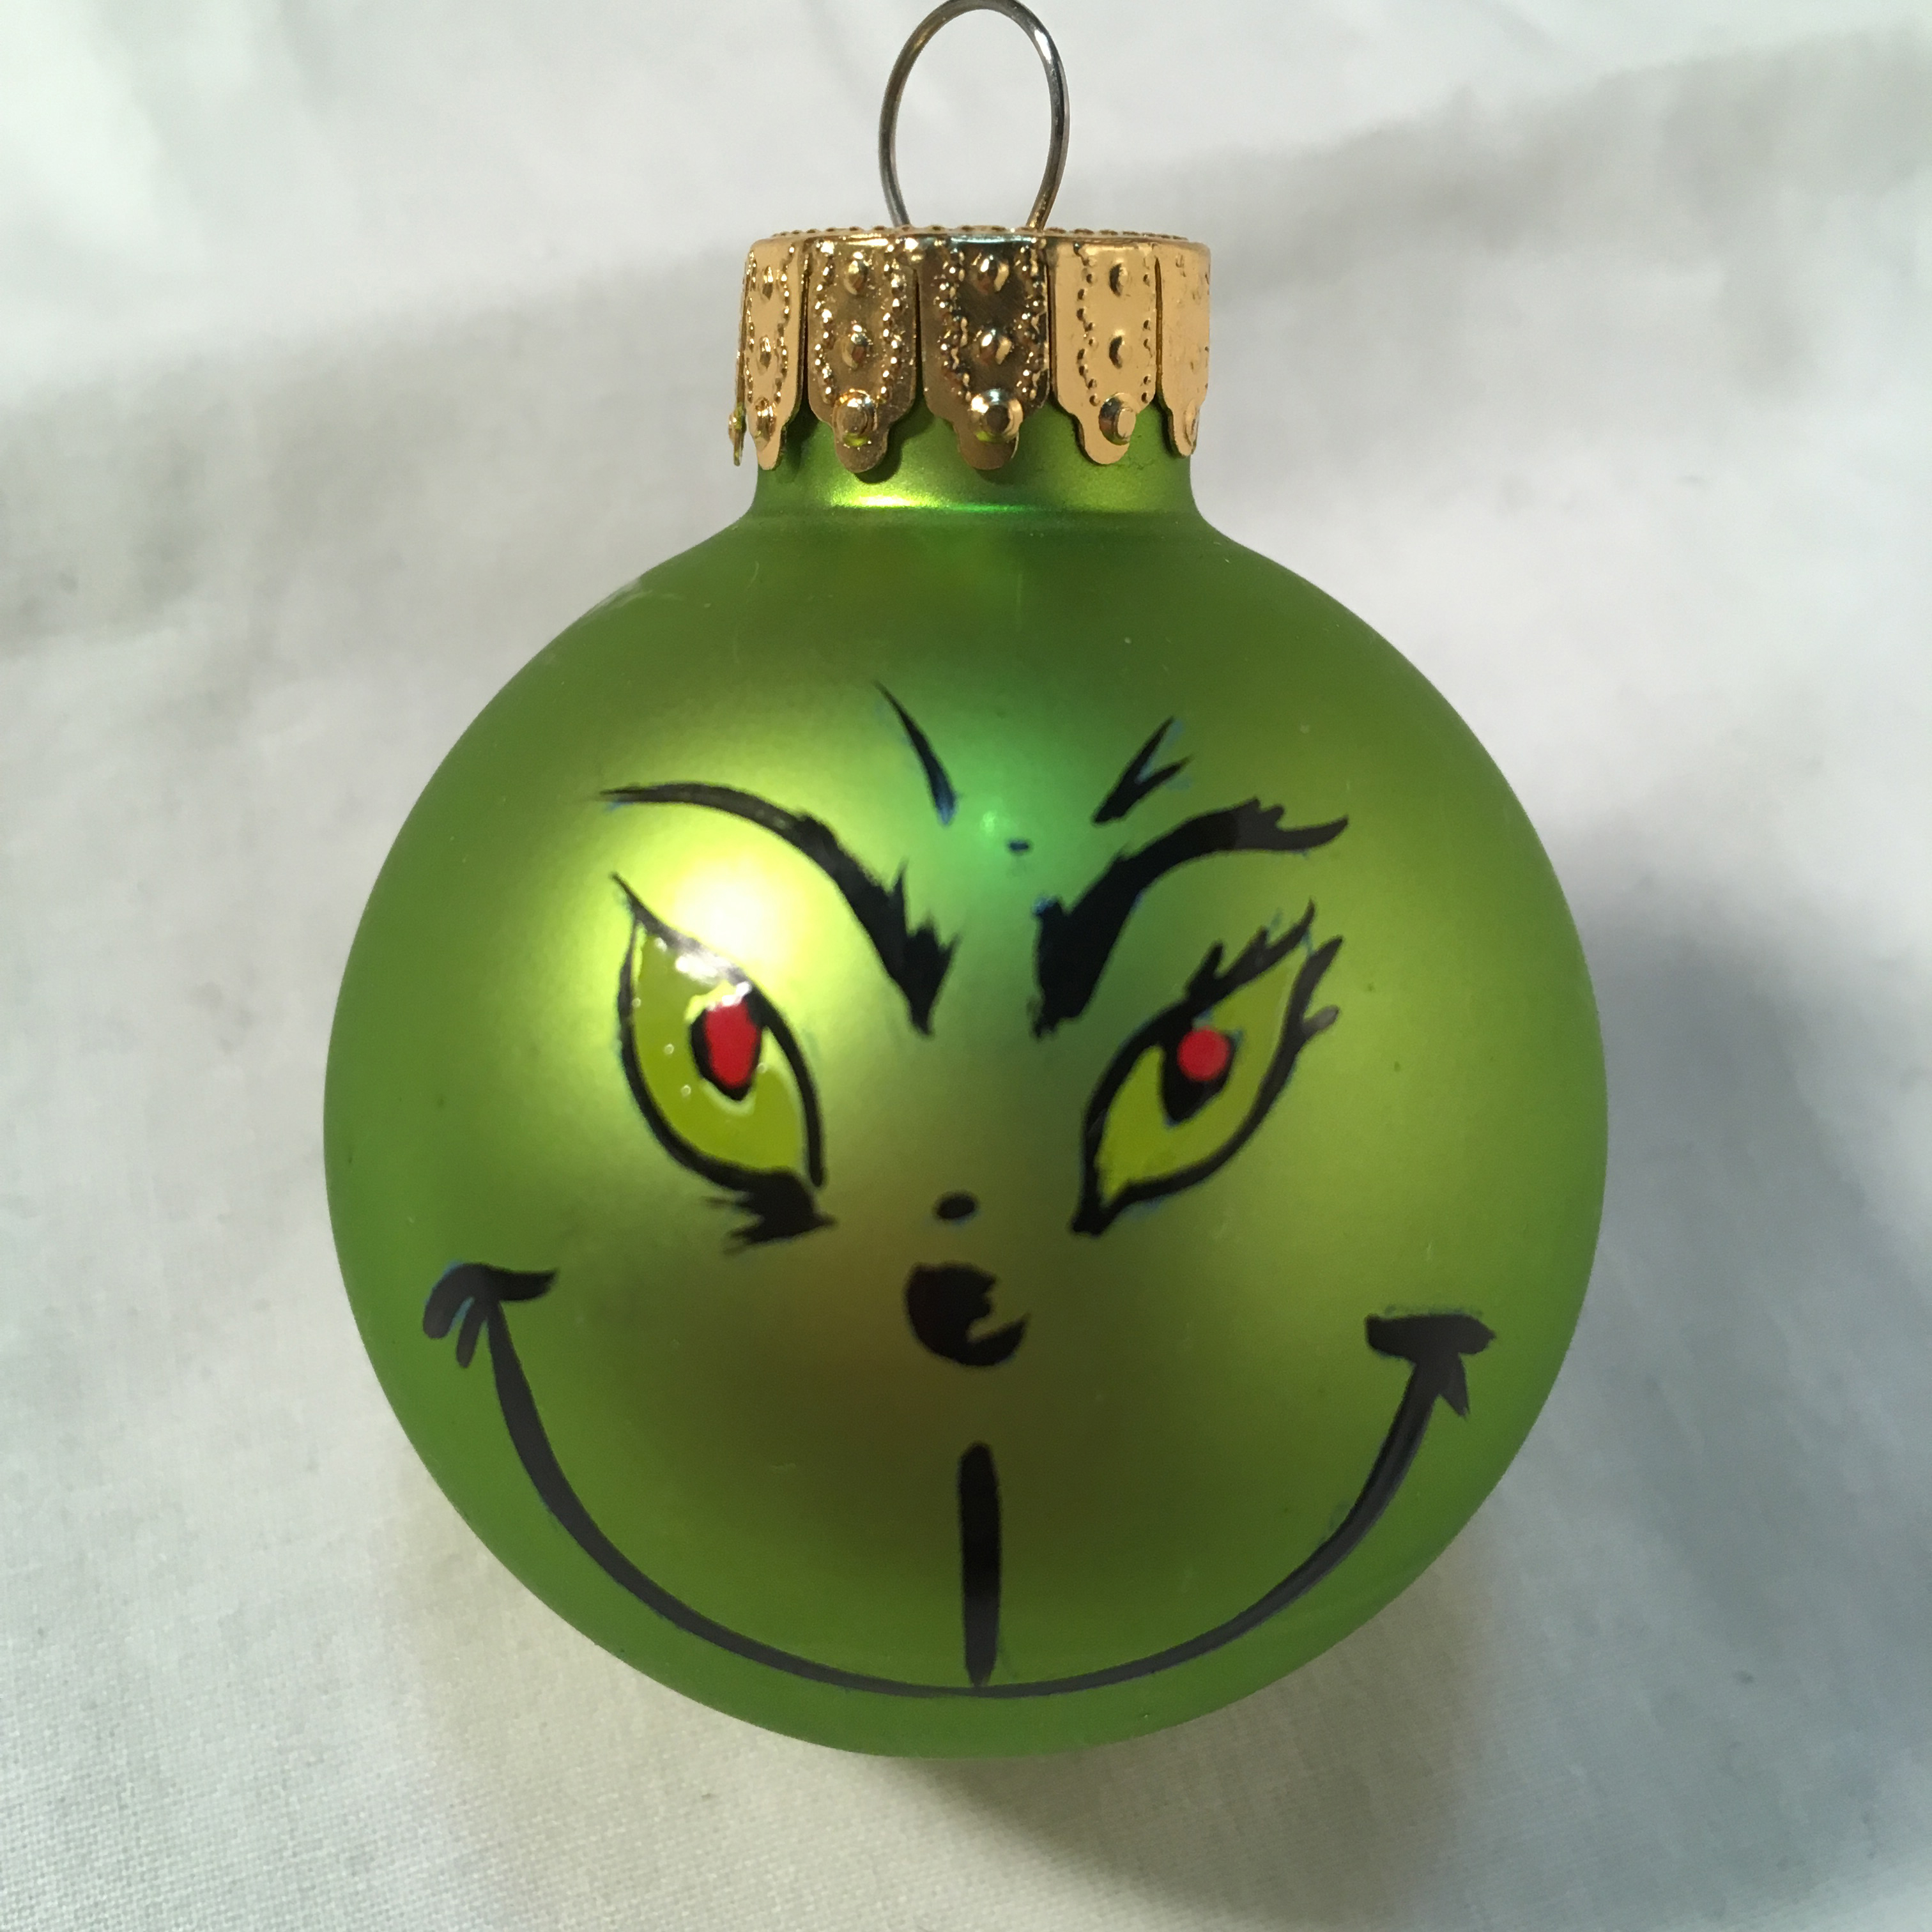 Small Grinch ornament